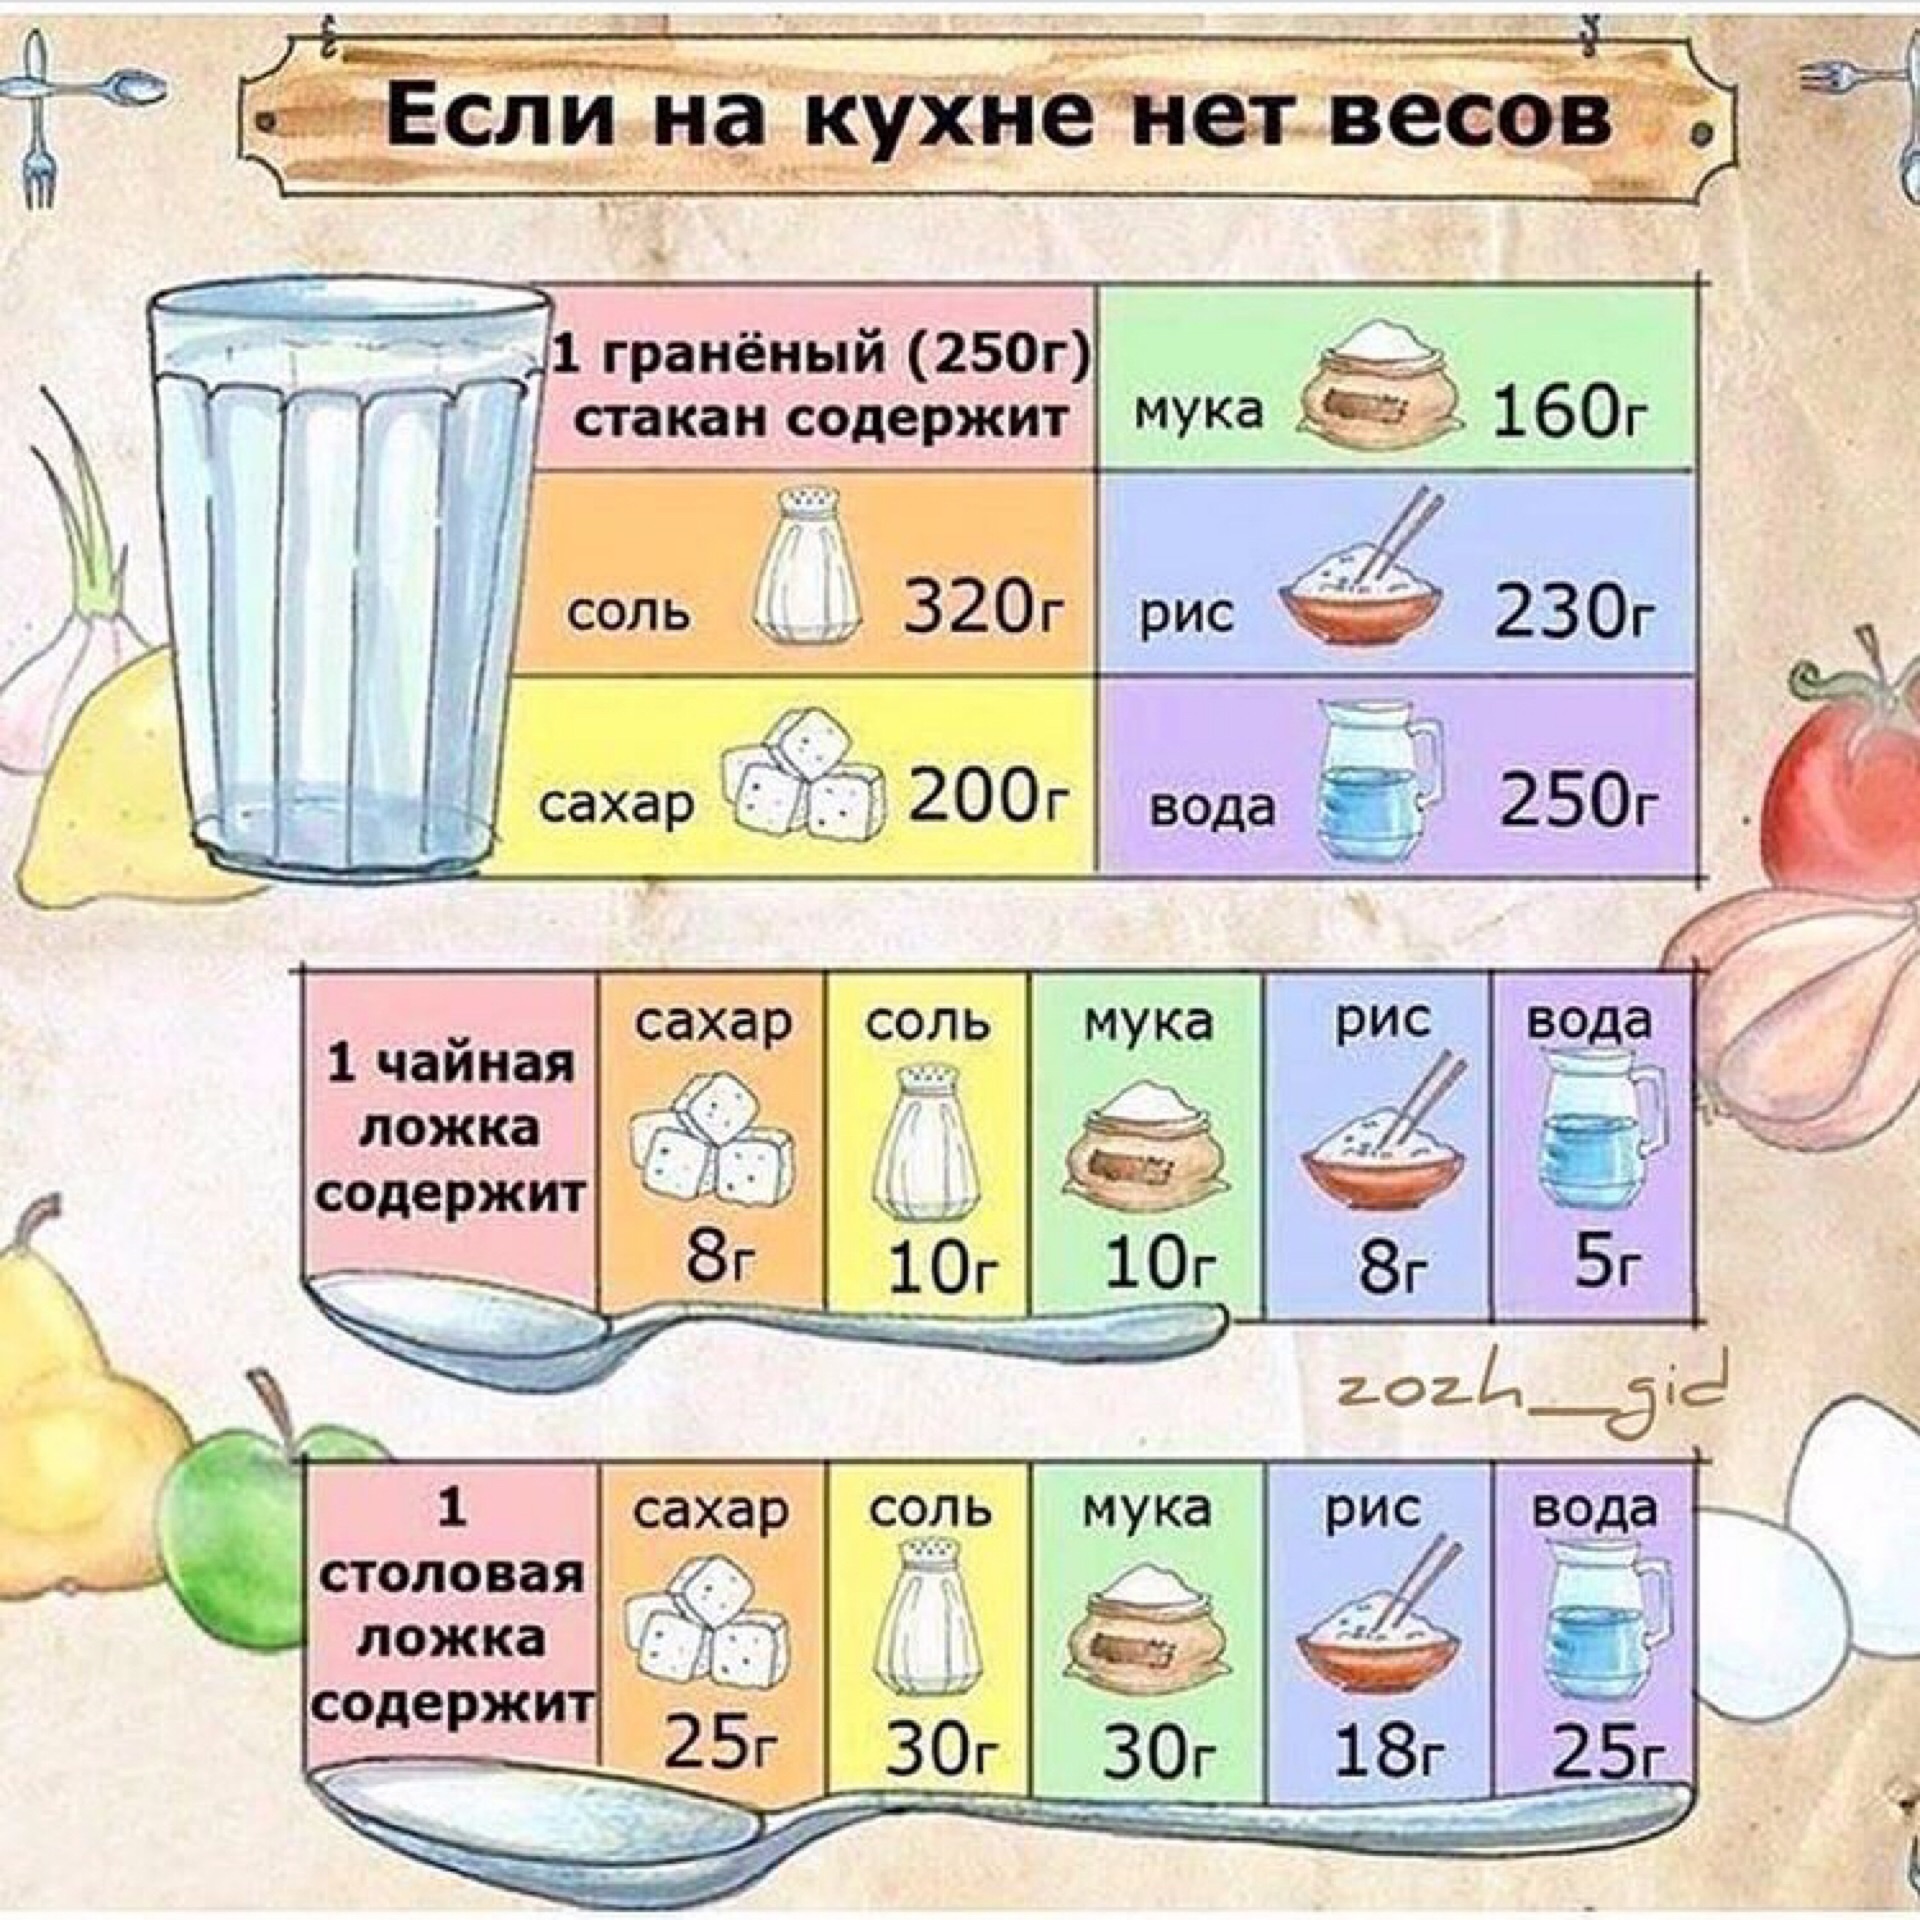 сколько весят продукты в стакане